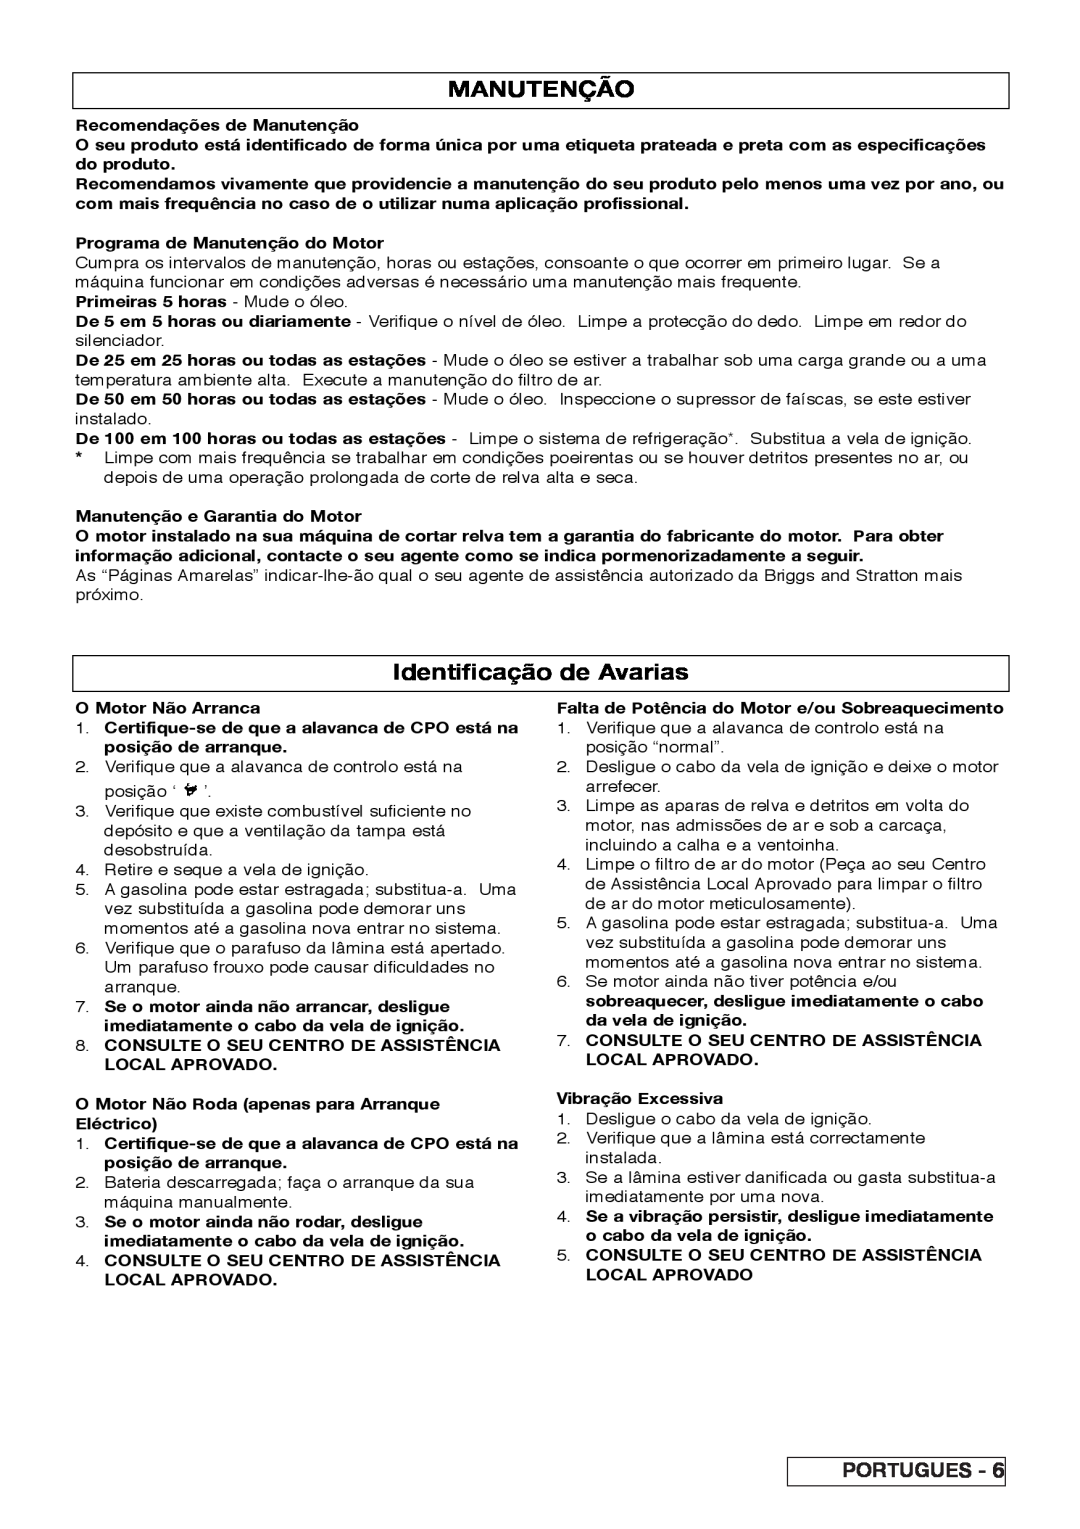 Husqvarna R 43SE manual Manutenção, Identificação de Avarias, Portugues 